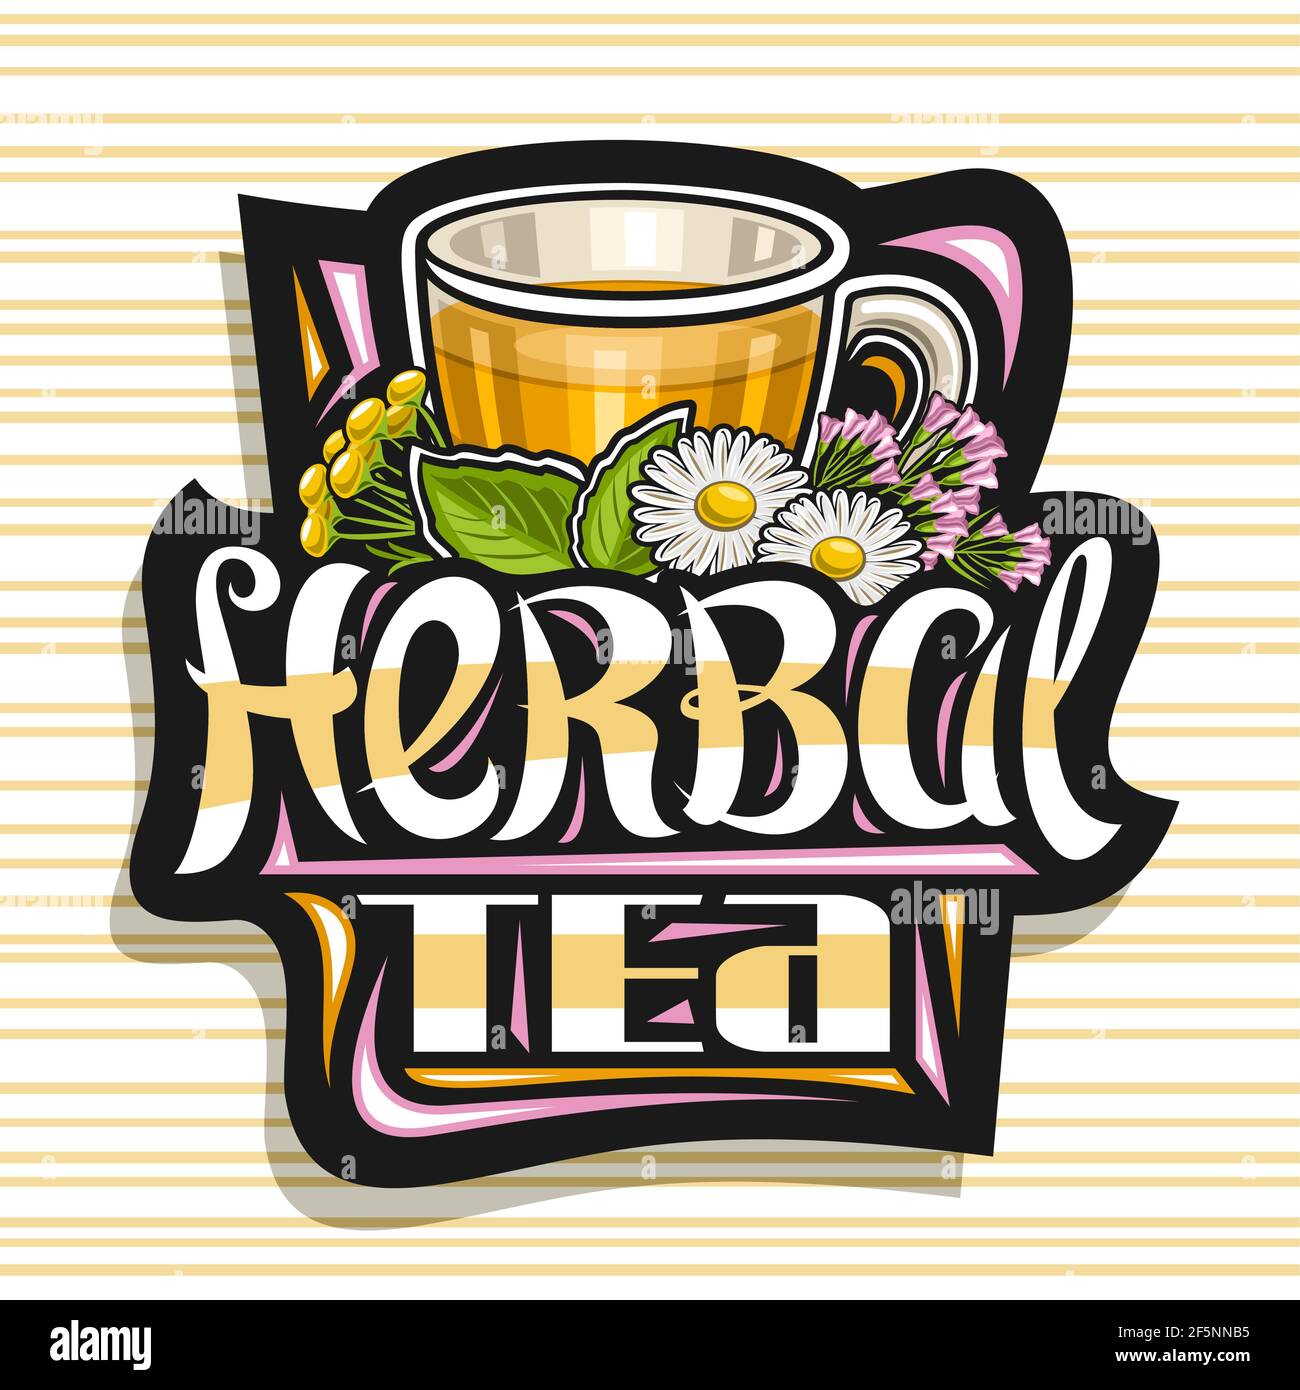 Logo vectoriel pour thé à base de plantes, signe décoratif foncé avec illustration d'une tasse de thé transparente avec boisson homéopathique orange chaude pour médication alternative Illustration de Vecteur